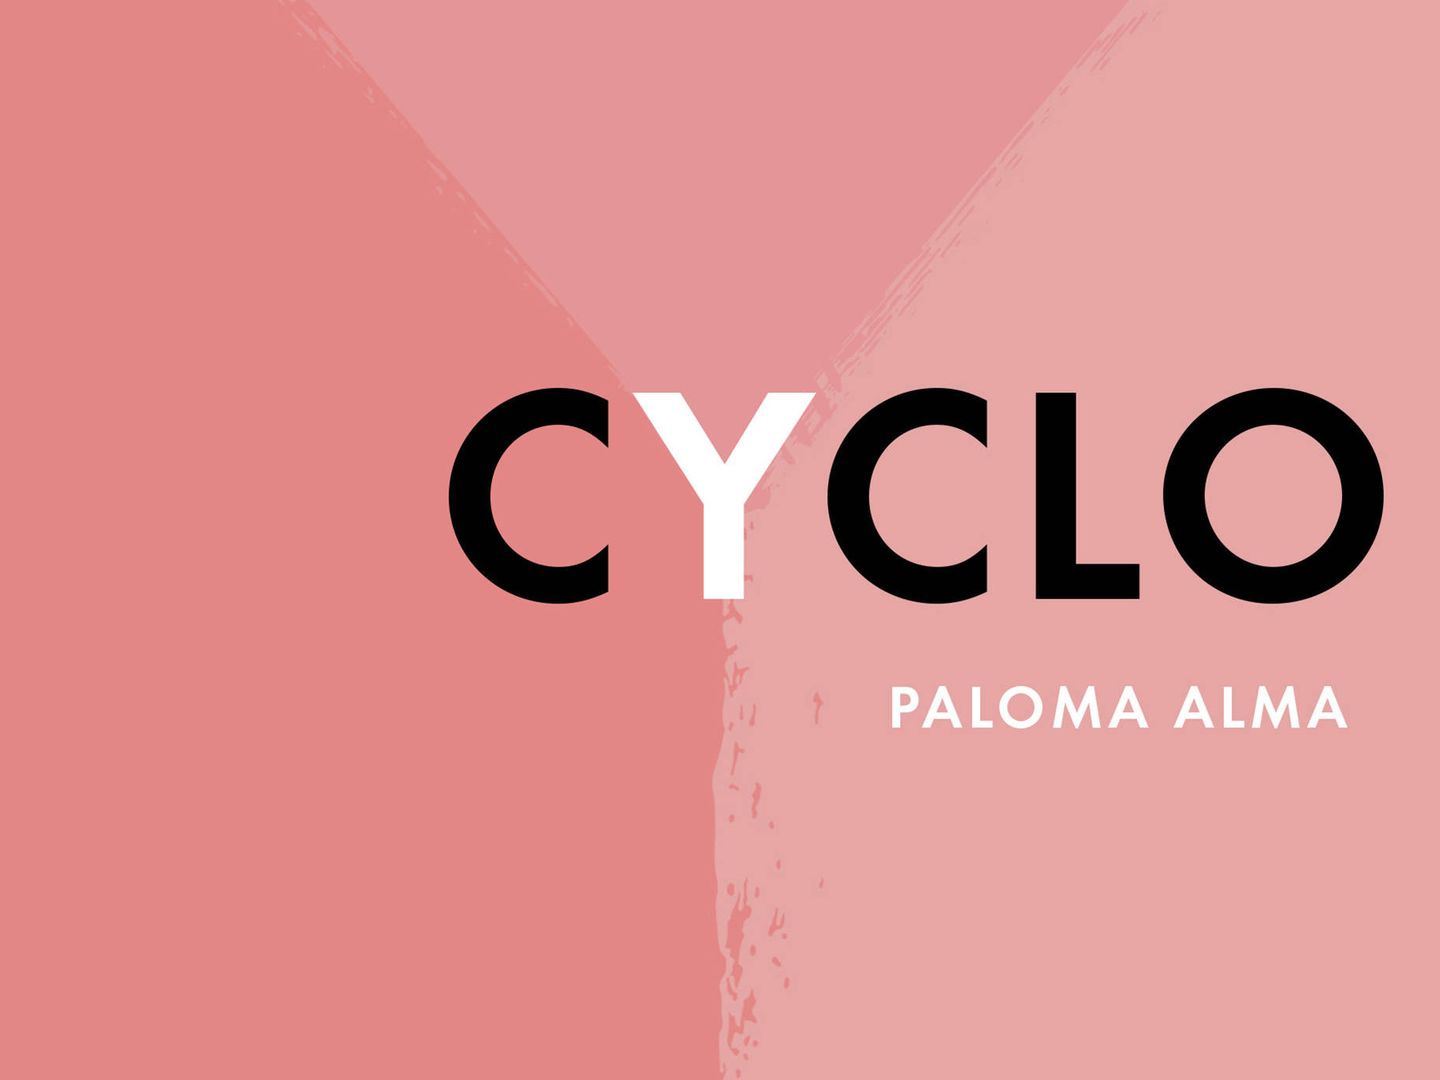 Extracto de la portada de 'Cyclo', de Paloma Alma.